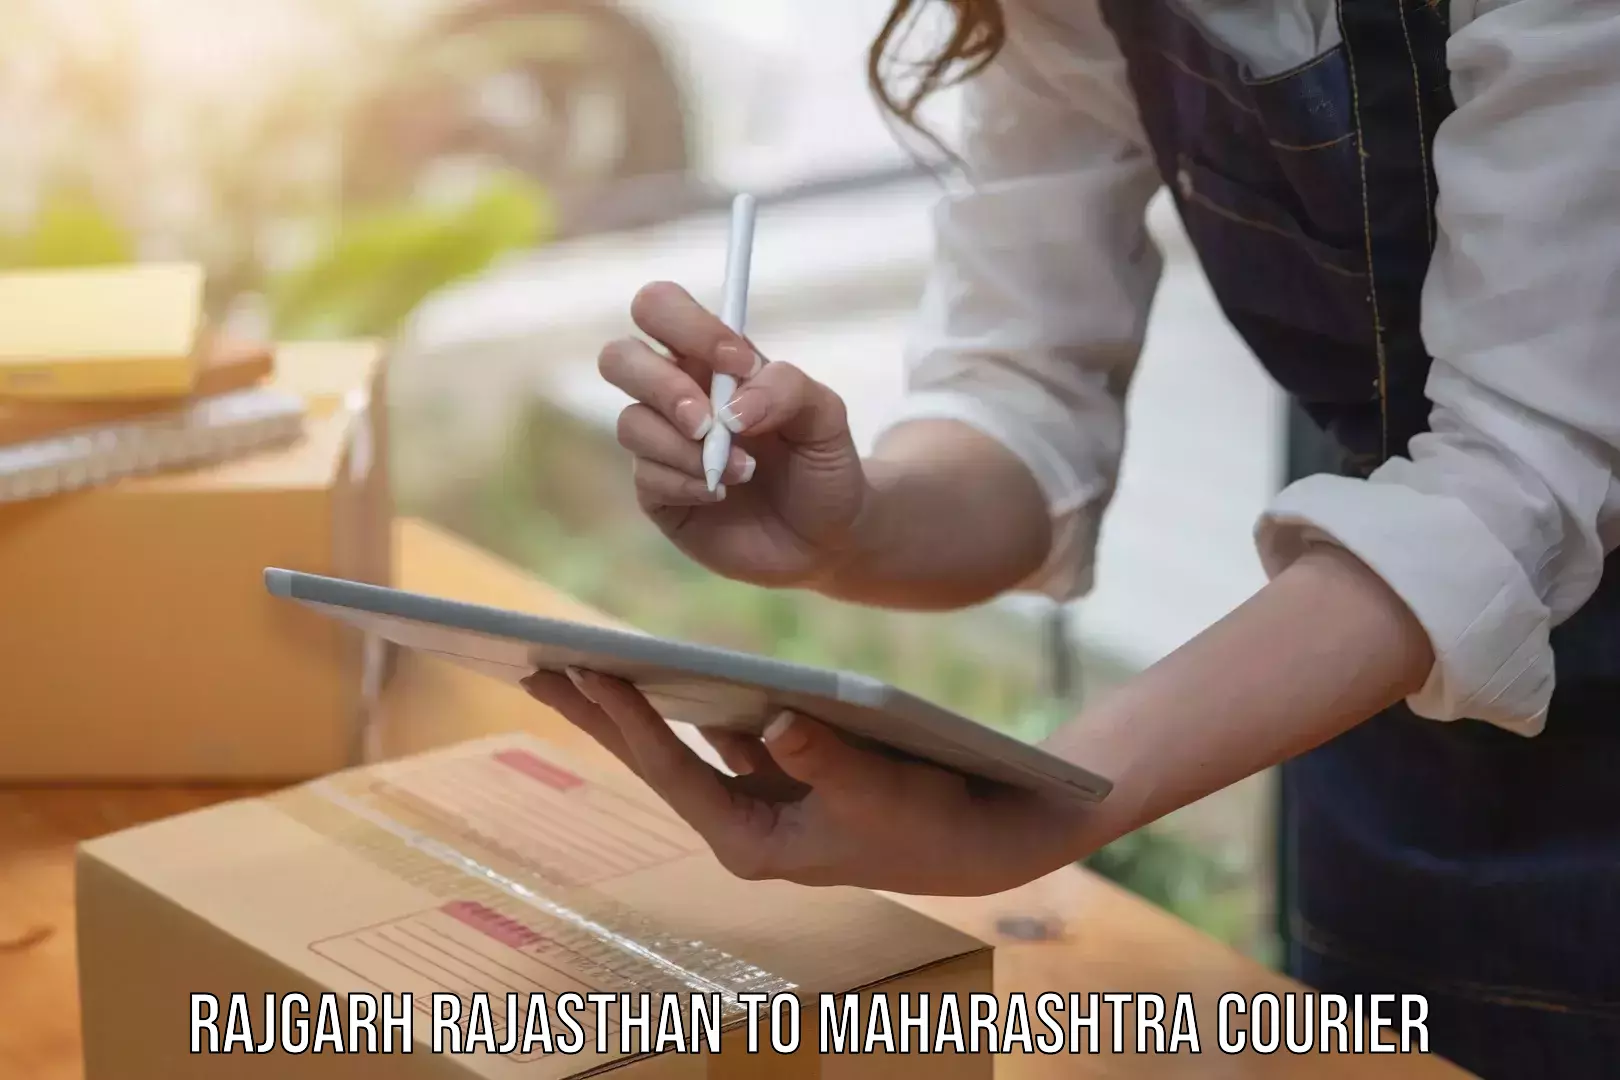 User-friendly courier app Rajgarh Rajasthan to Warora